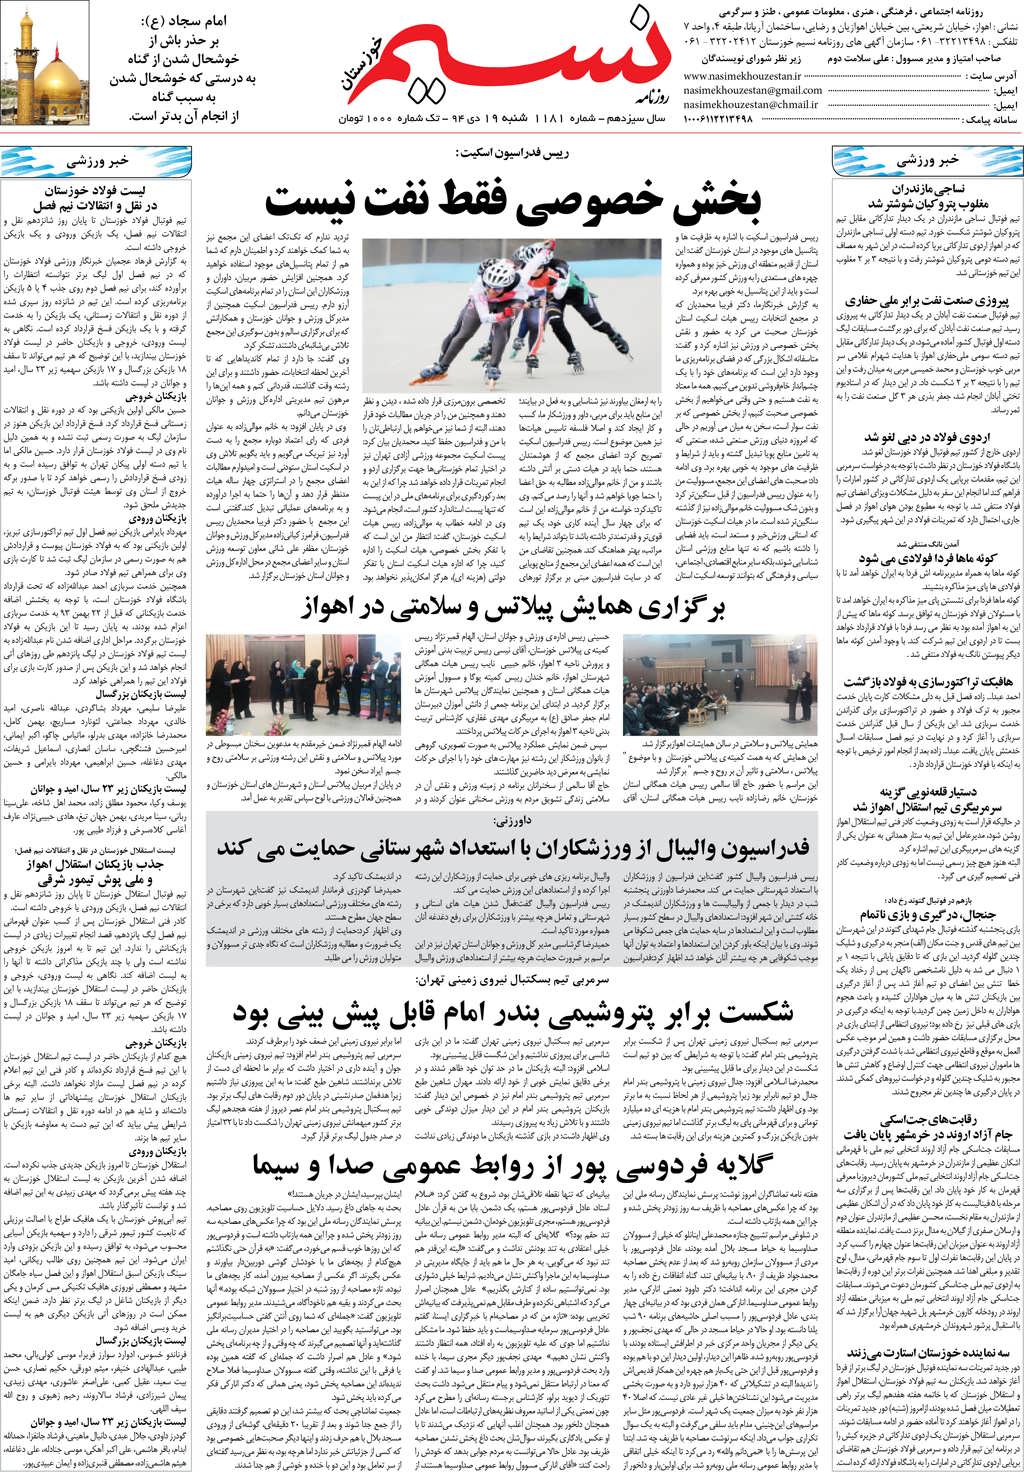 صفحه آخر روزنامه نسیم شماره 1181